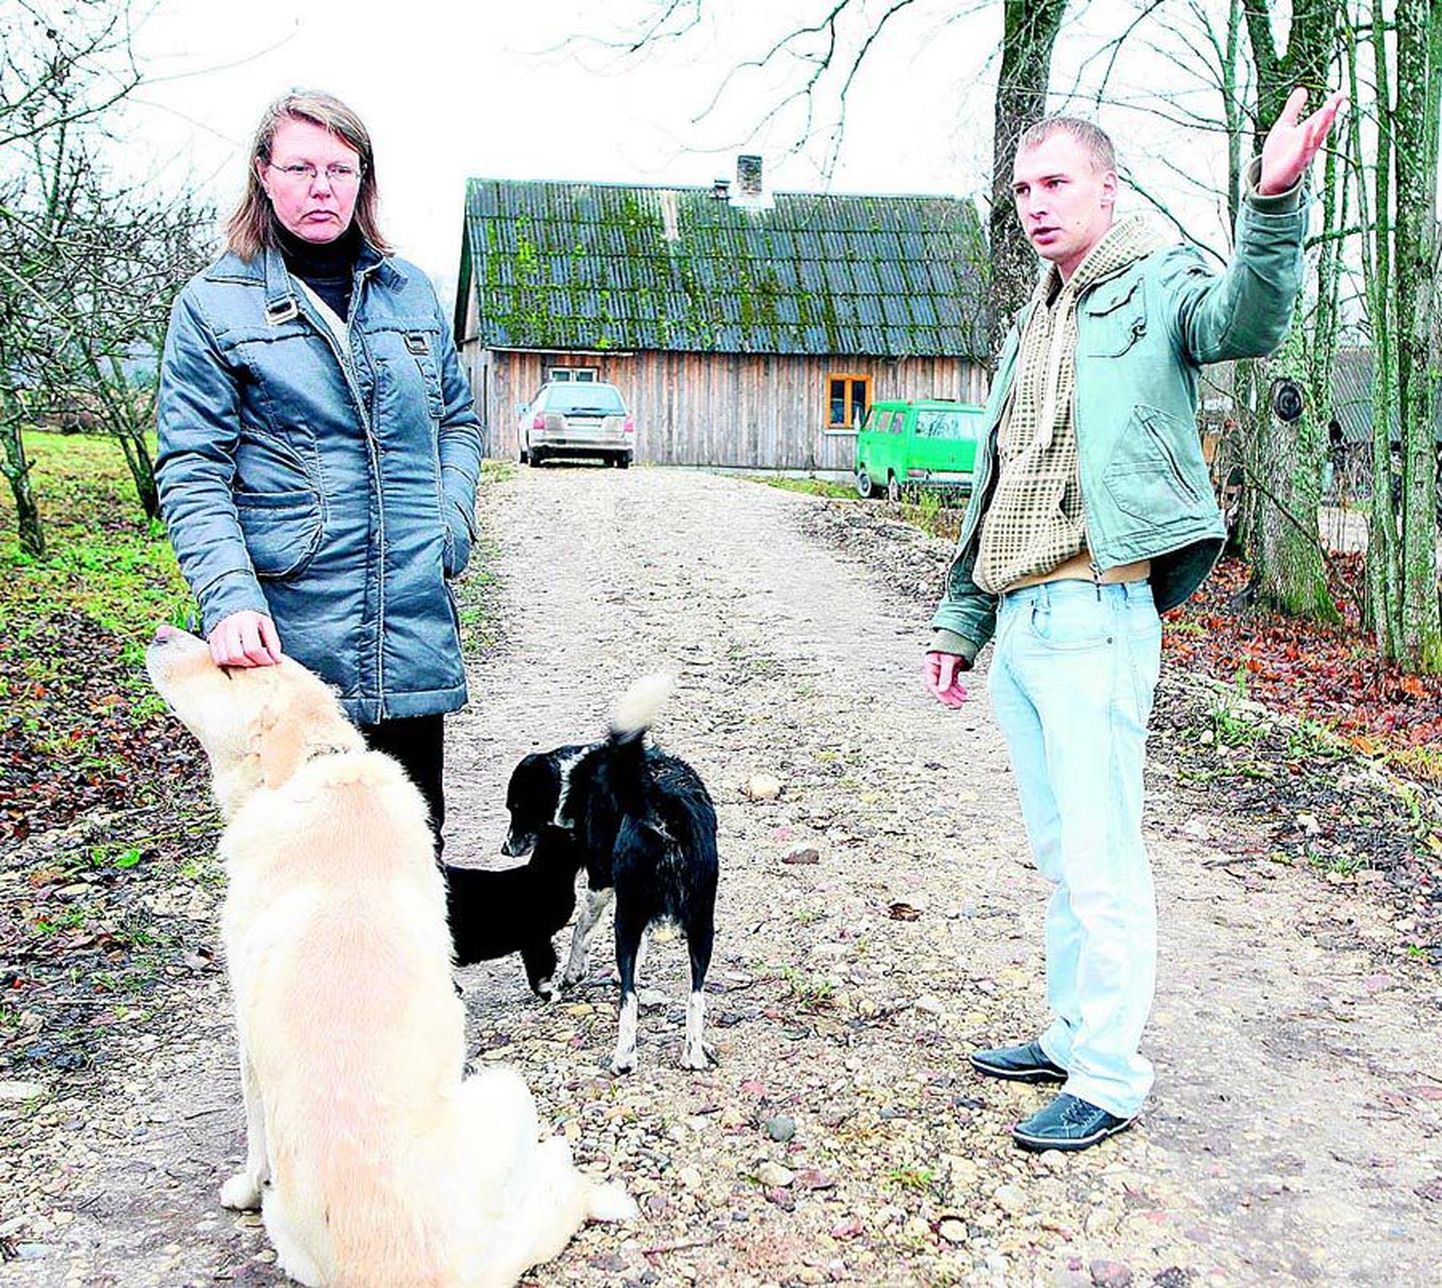 Murese talu perenaine Mirja Arm ja perepoeg Madis Arm ütlevad, et ei taha võõraid koeri tulistada, kuid kui murdmine jätkub, tuleb nad siiski maha lasta. Nende endi koerad on pigem lammaste hoidjad.